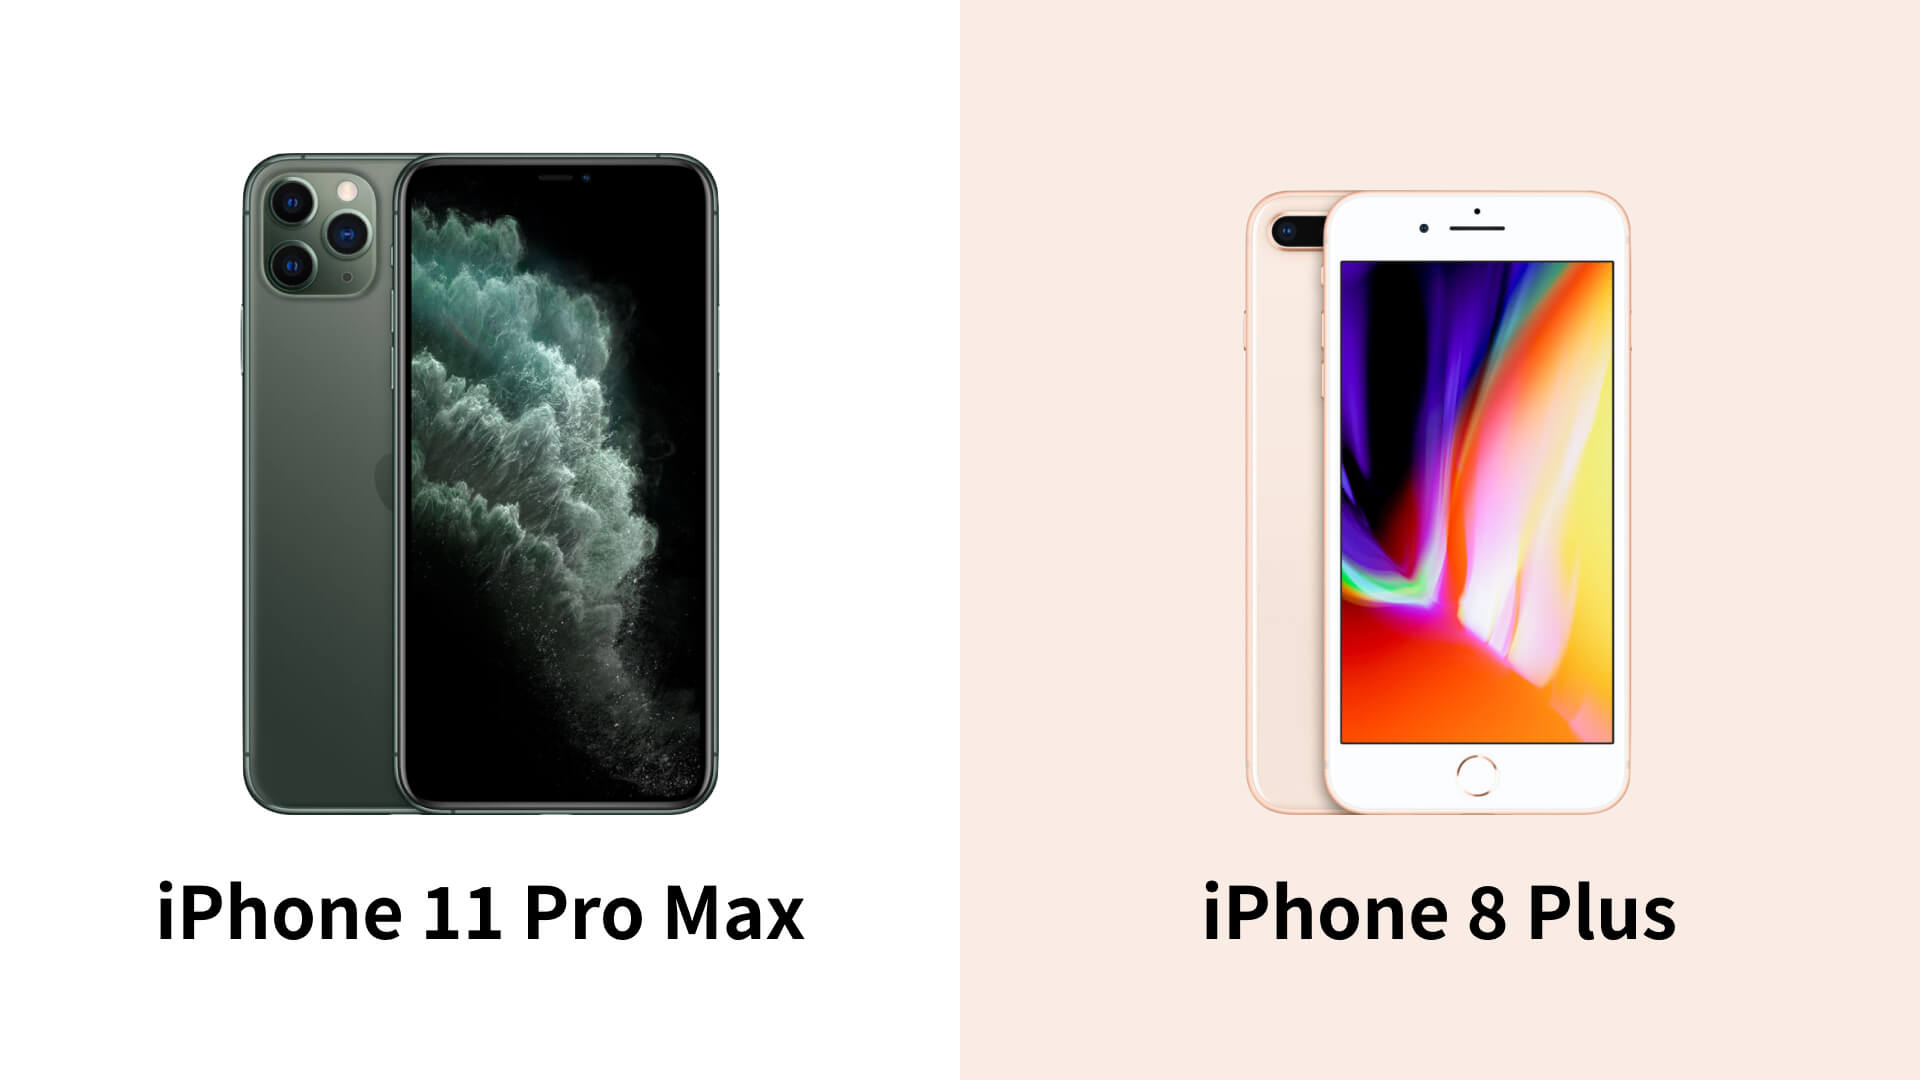 アイフォン 11 大き さ Iphone Xs Max は本当に 大きすぎる のか